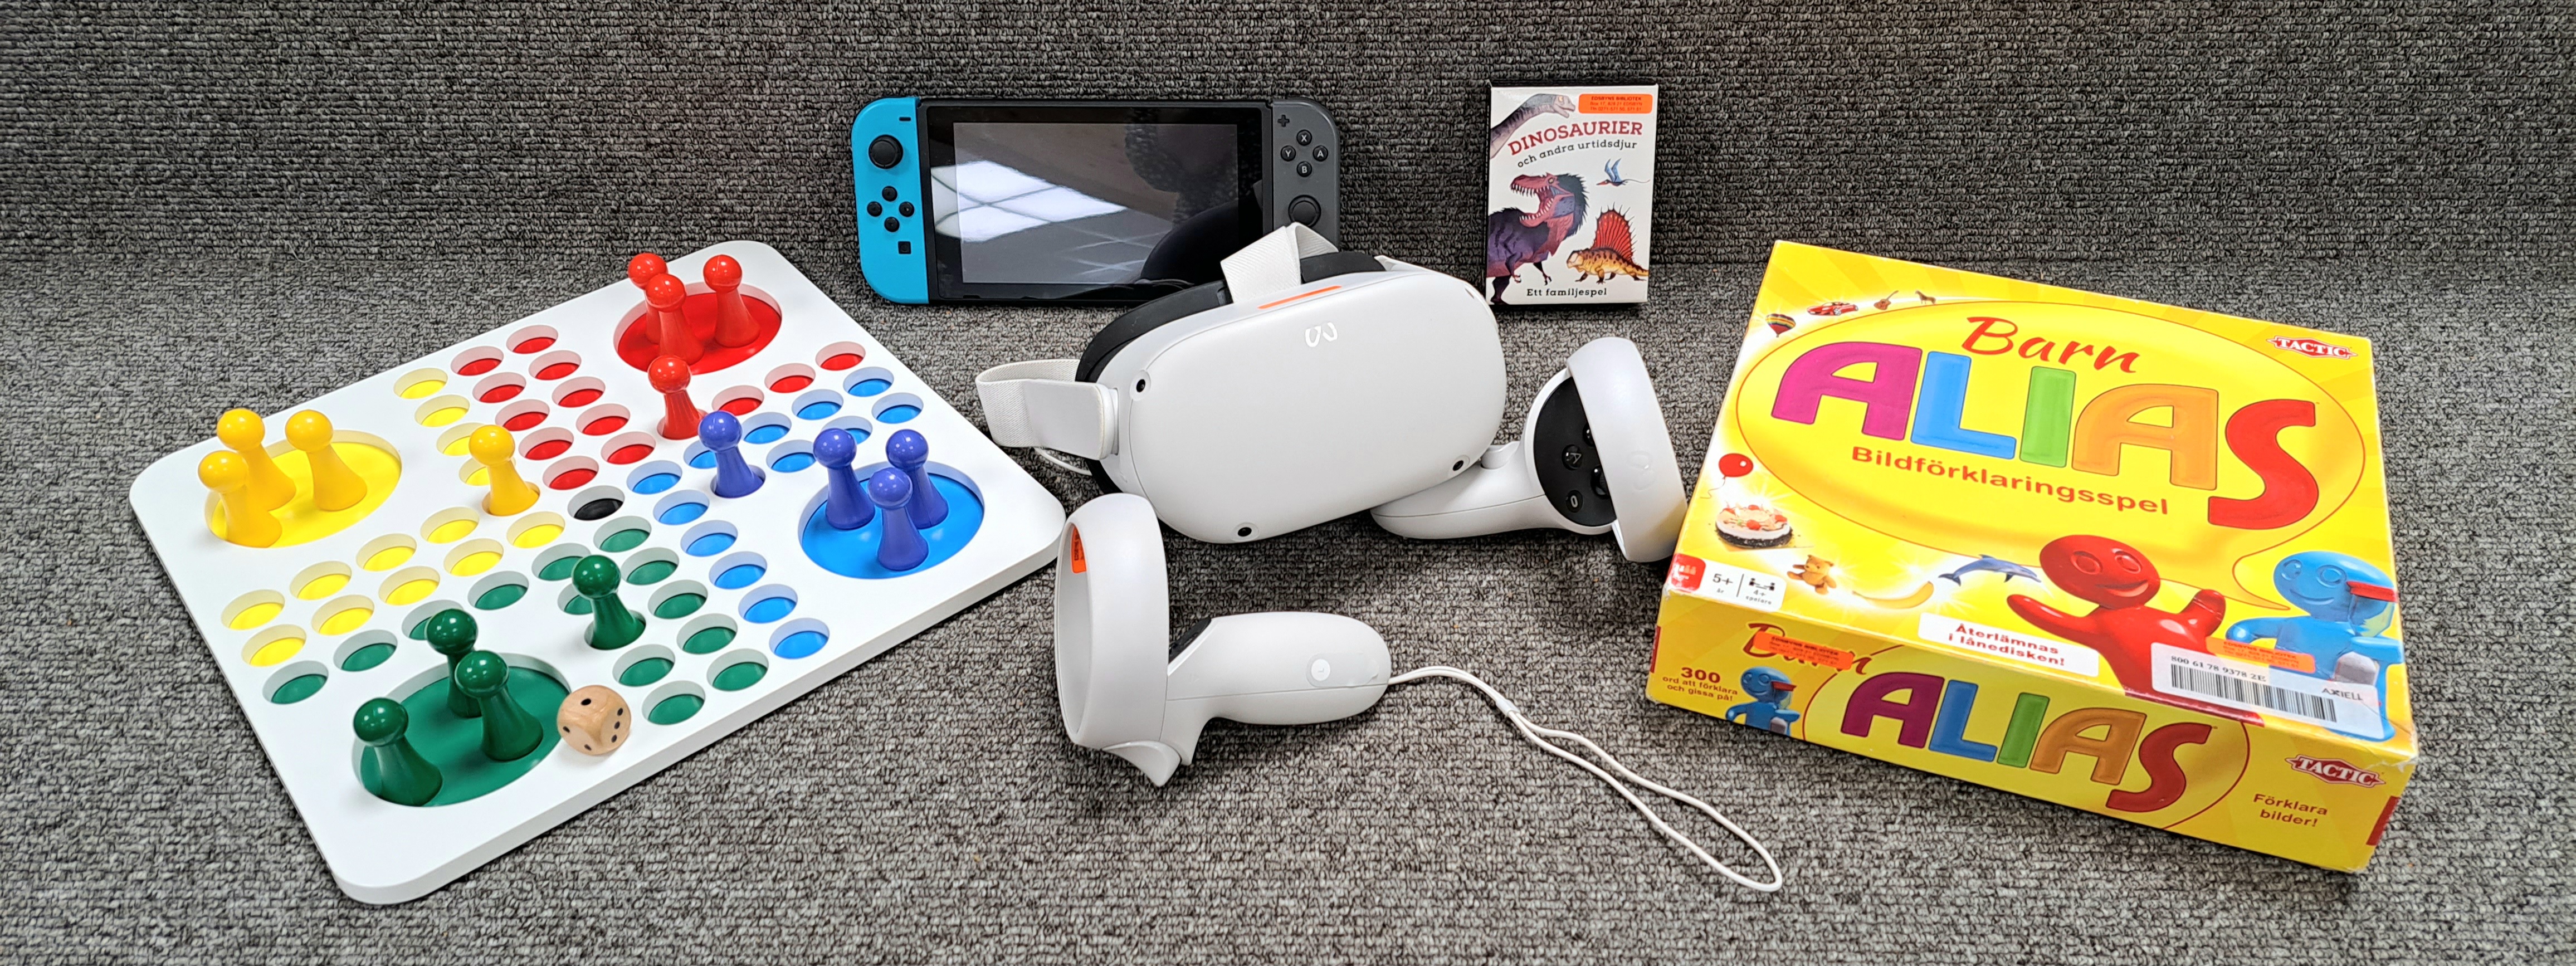 Ett fiaspel, en TV-spelkonsol, VR-glasögon med två handkontroller, ett dinosauriespel och ett barn-Alias-spel mot en grå bakgrund.